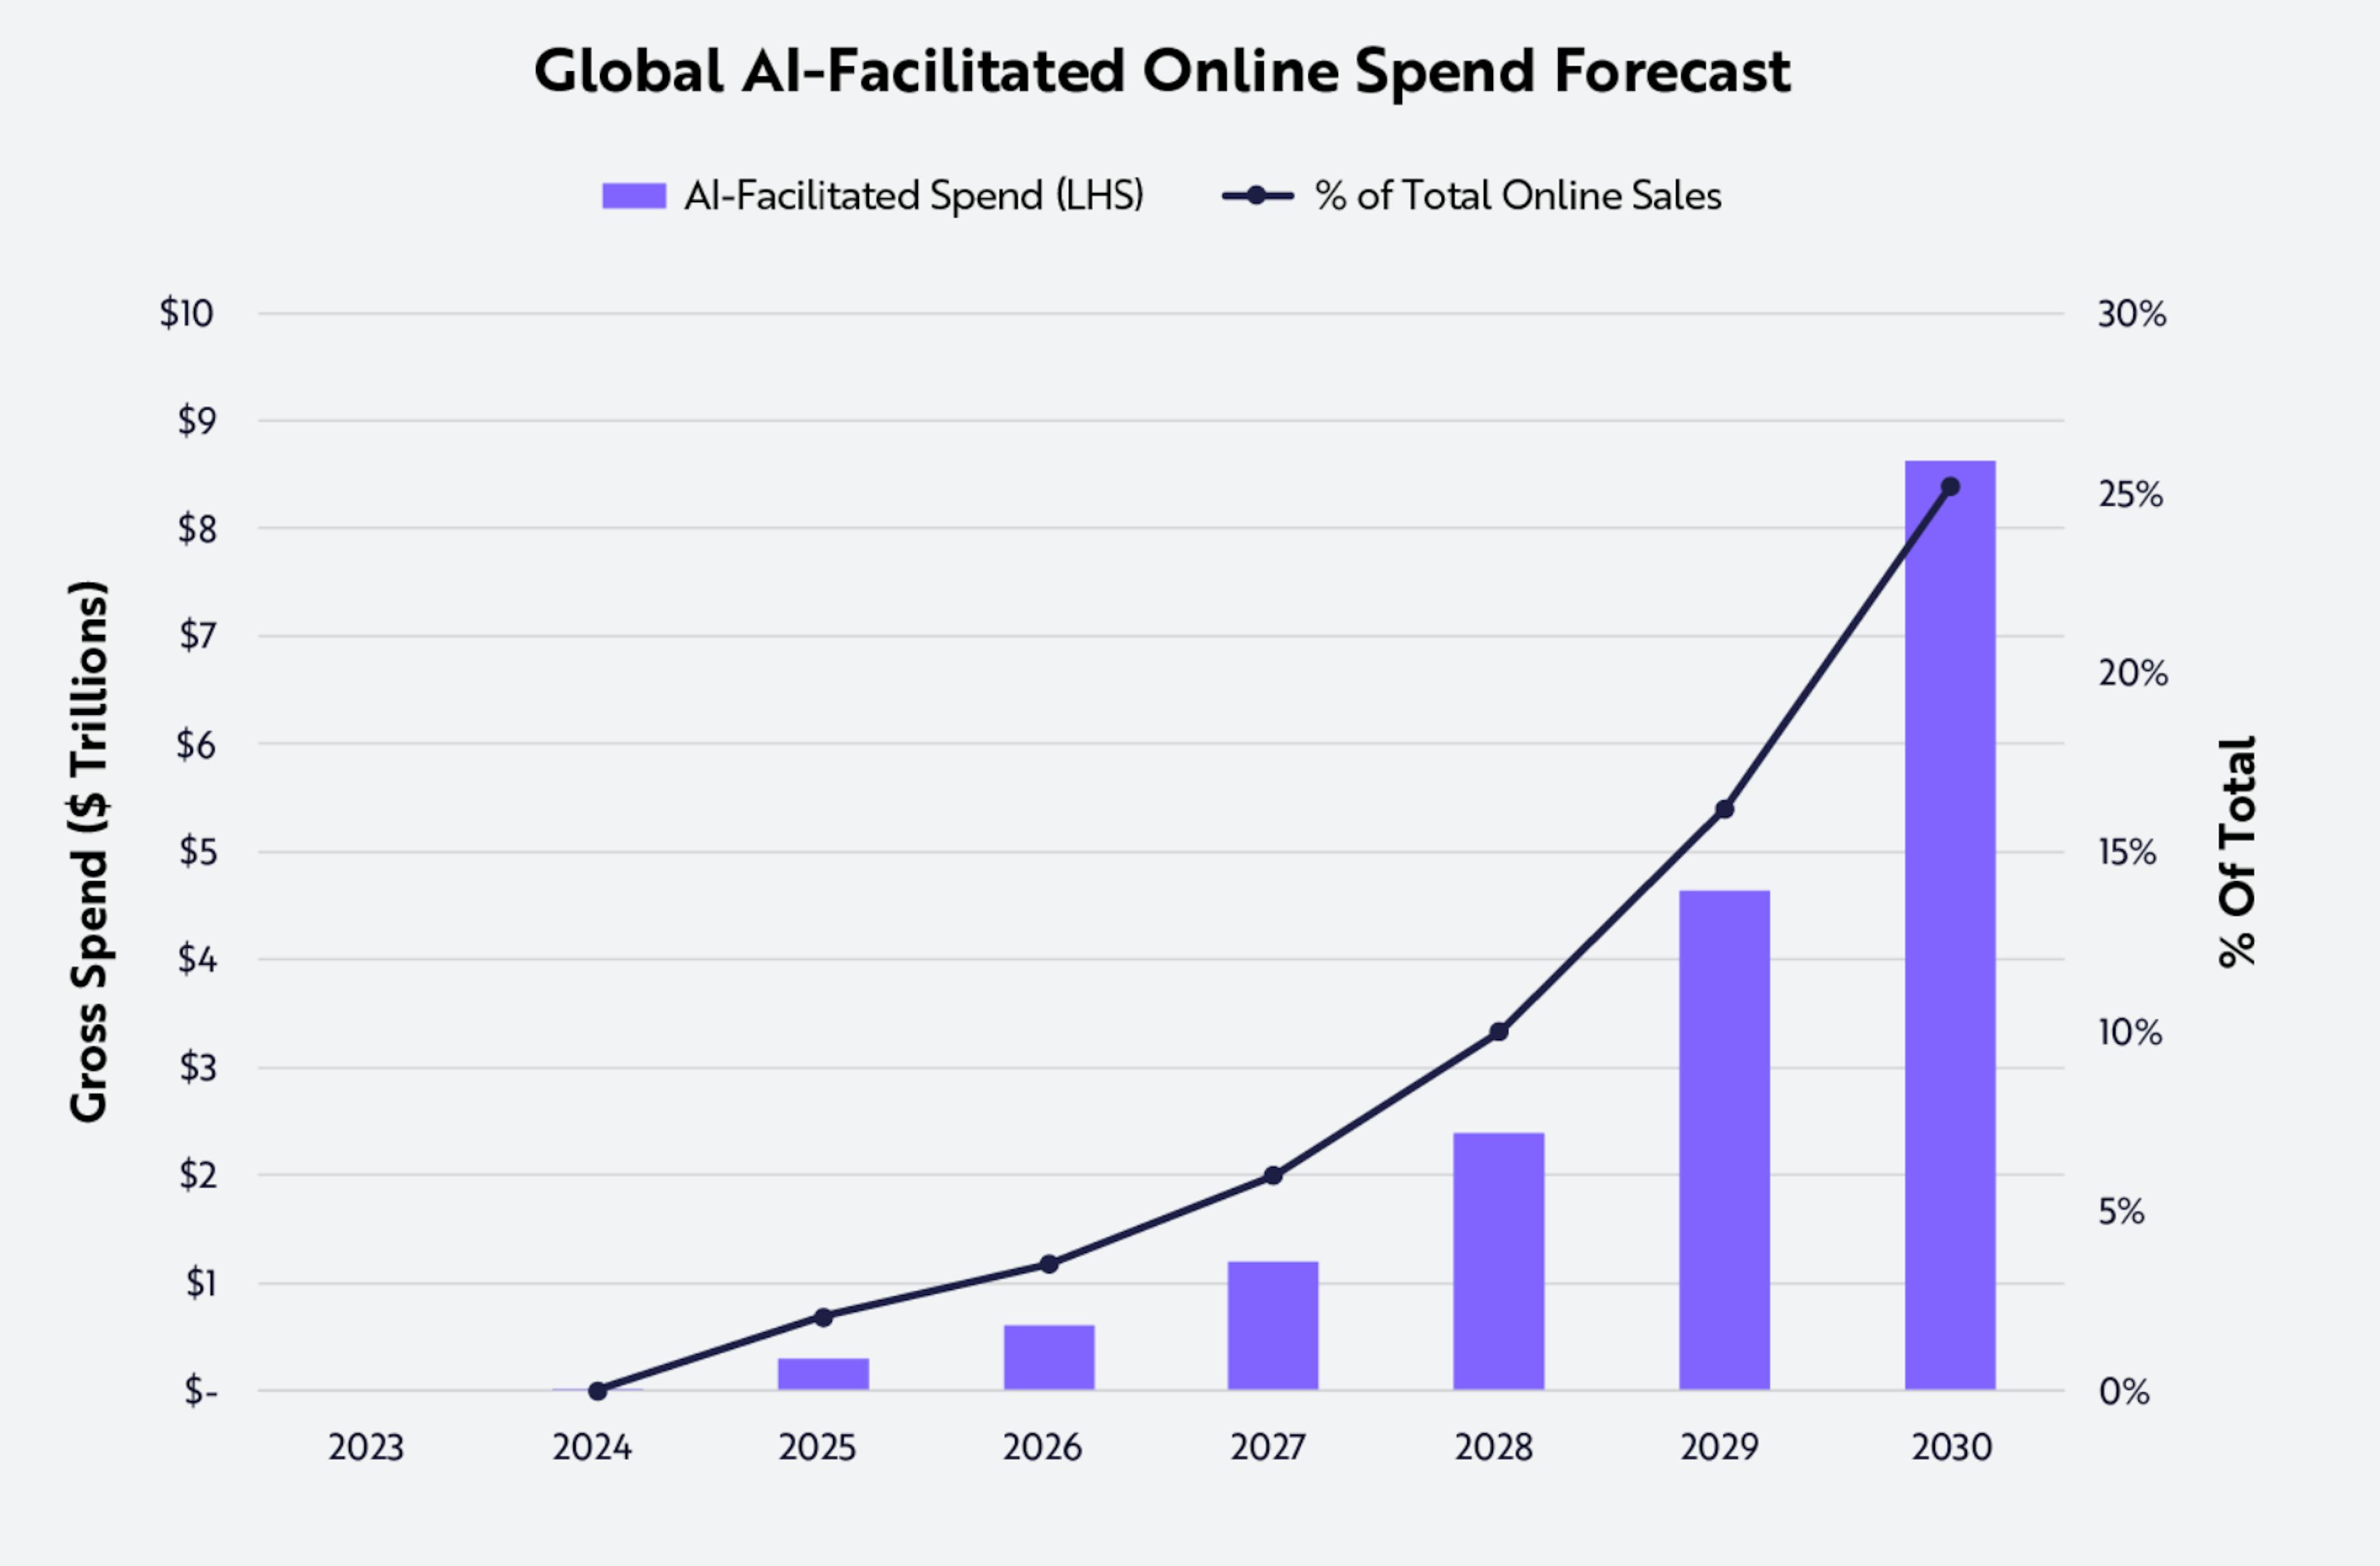 featured image - Vendas on-line facilitadas por IA devem atingir US$ 9 trilhões até 2030 